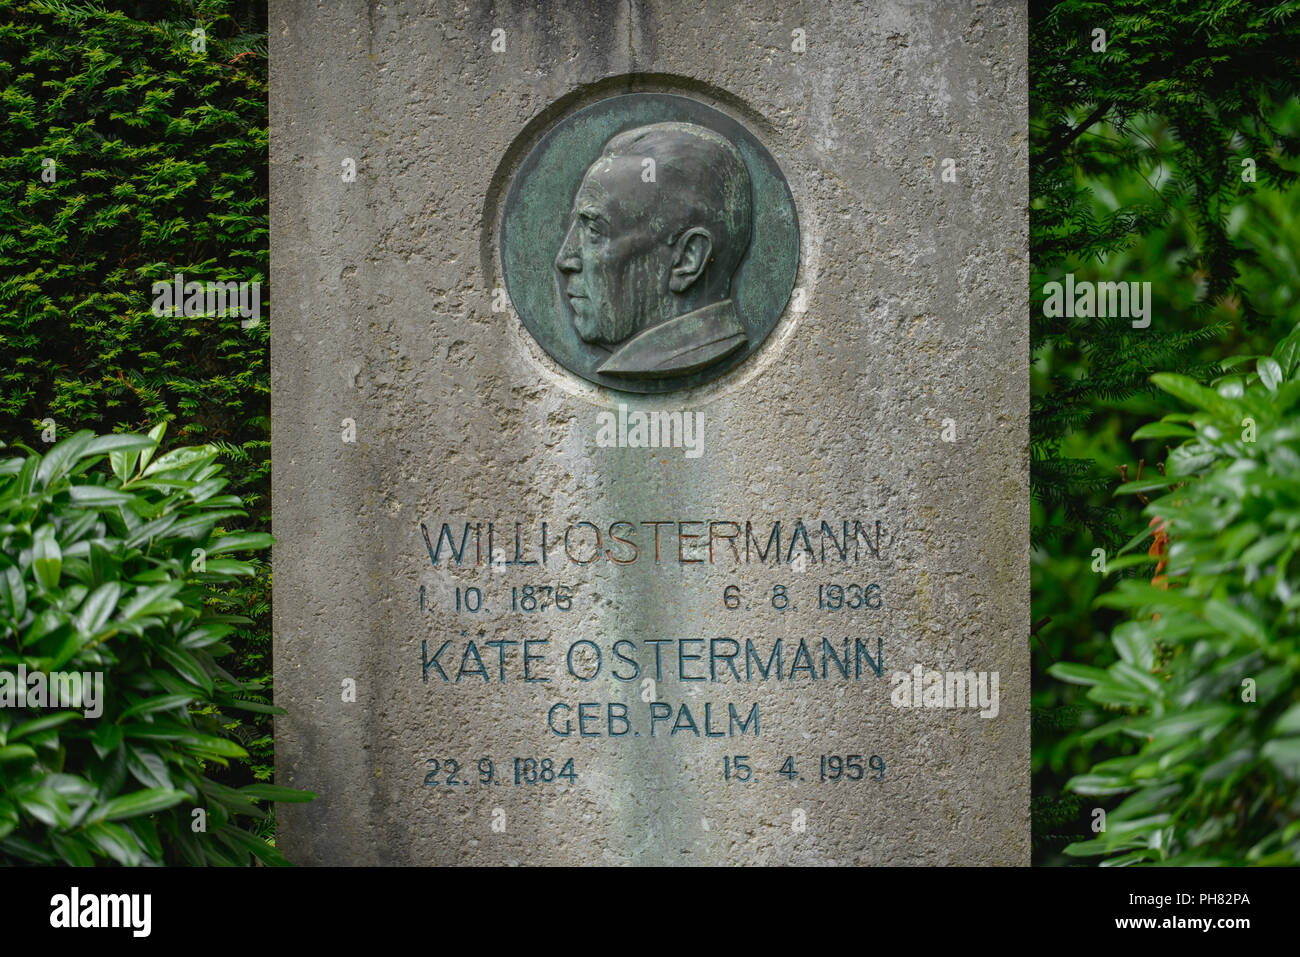 Ehrengrab, Willi Ostermann, Melaten-Friedhof, Aachener Strasse, Lindenthal, Koeln, Nordrhein-Westfalen, Deutschland Stock Photo